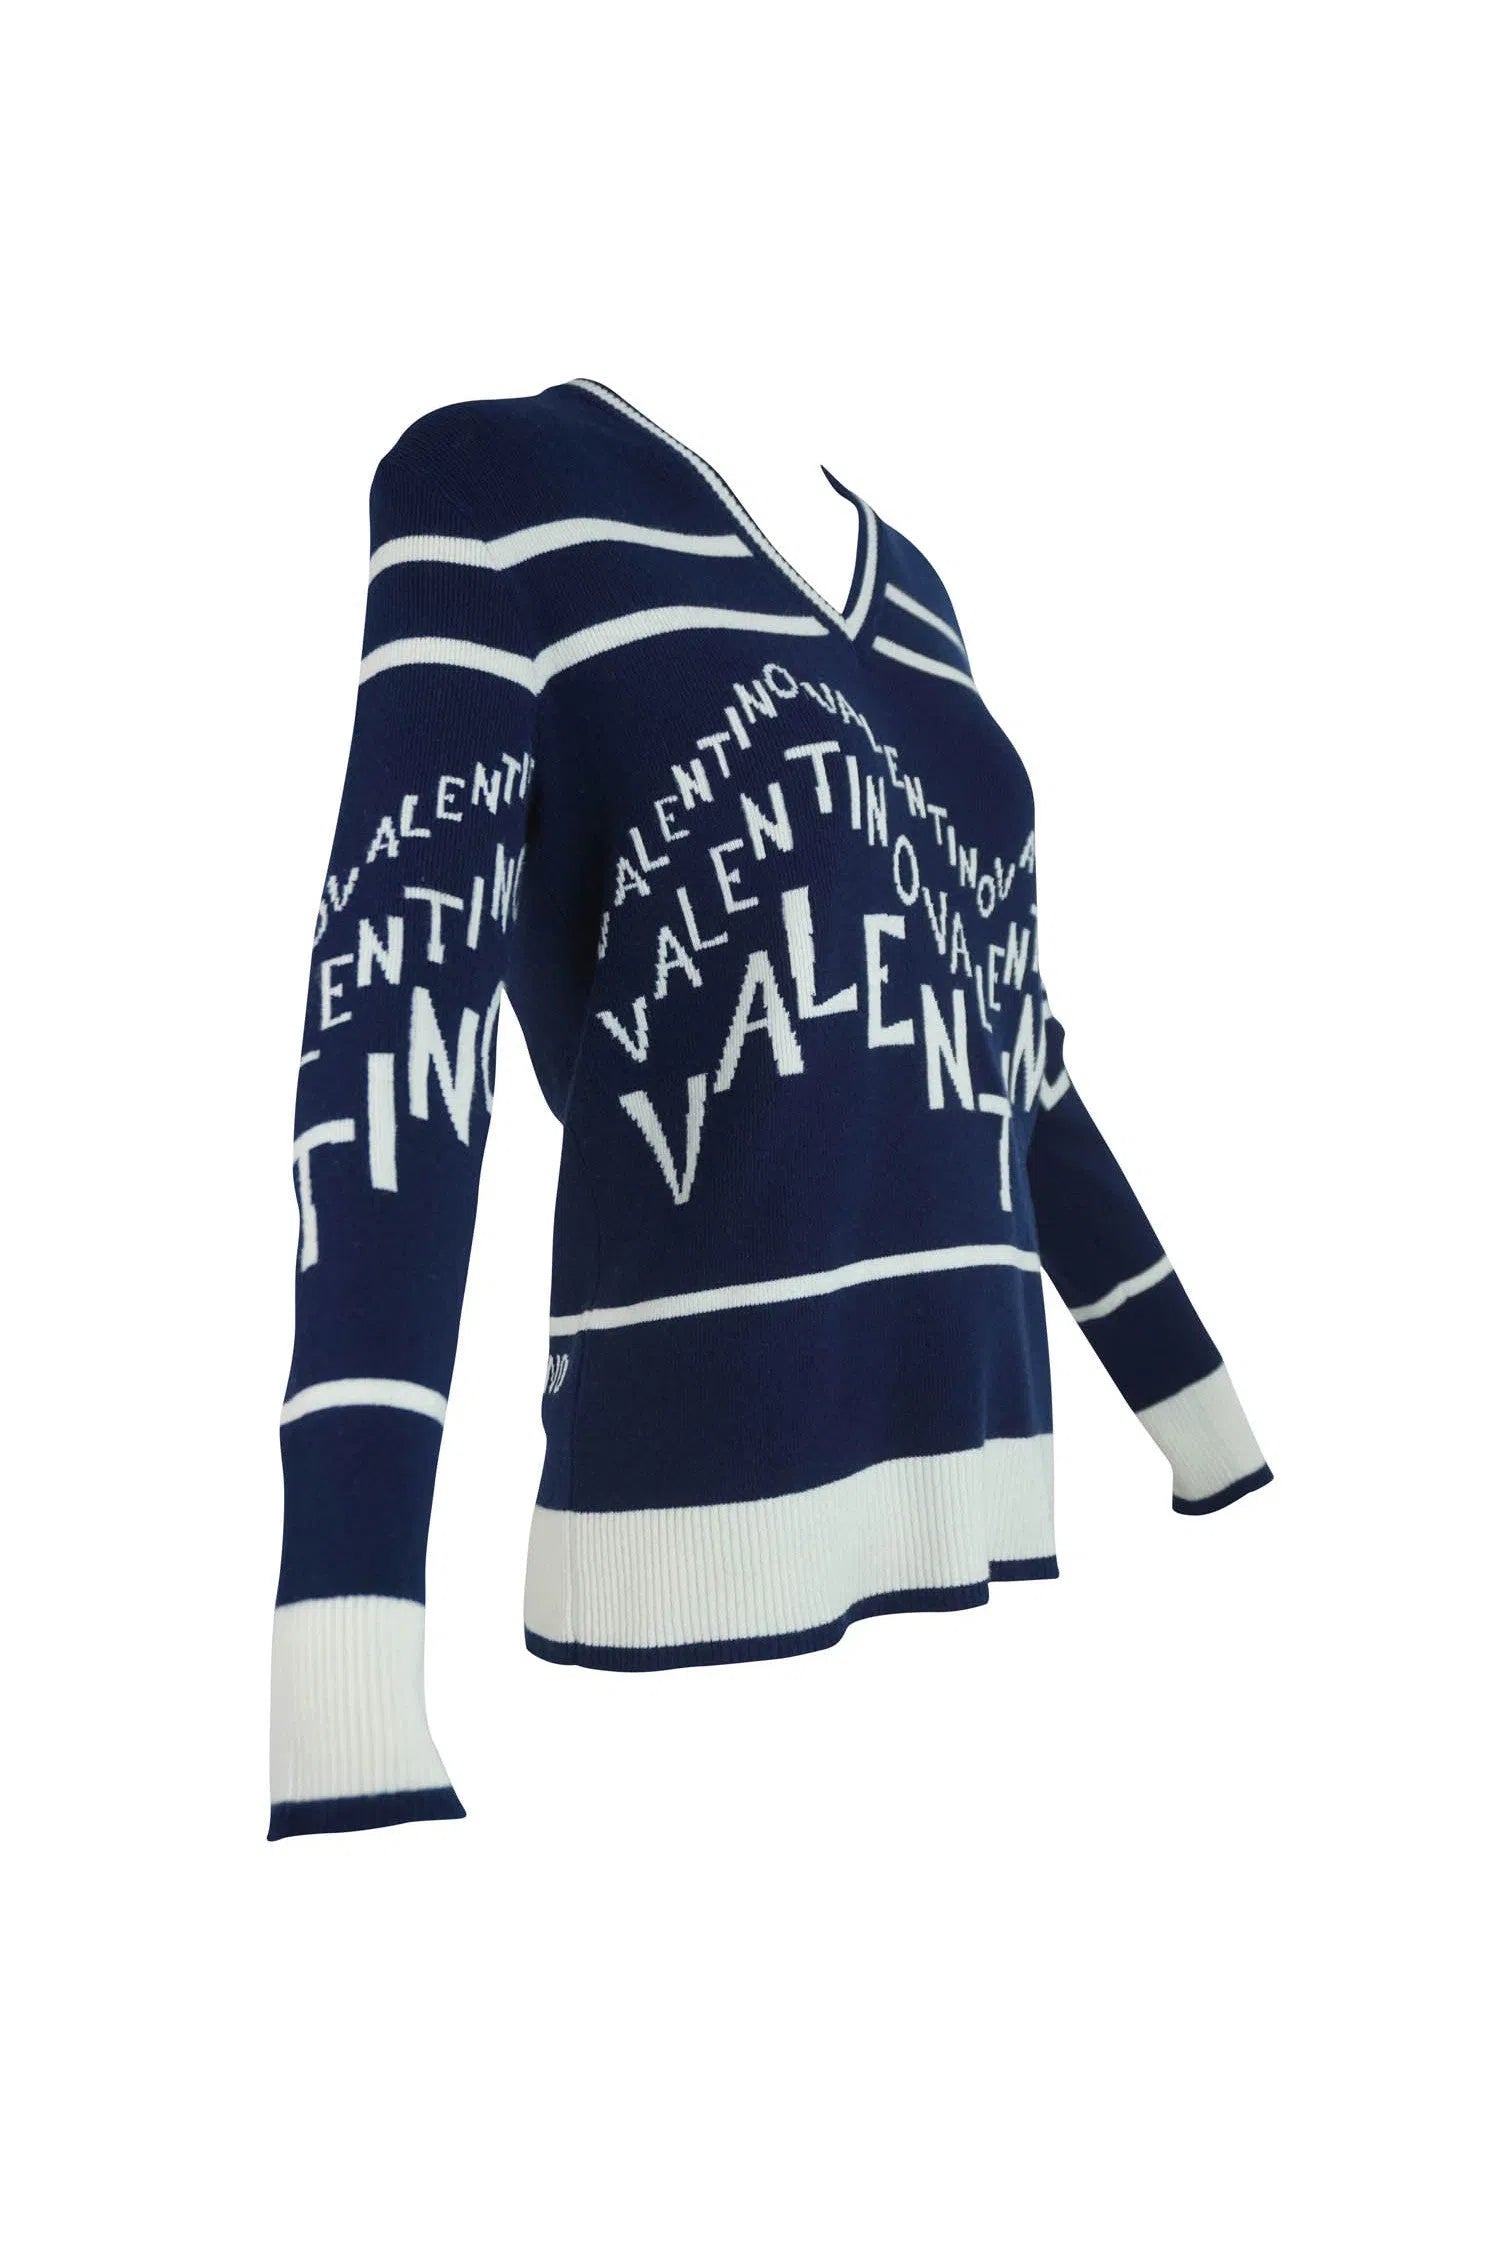 Valentino Logo V Neck Sweater 2019